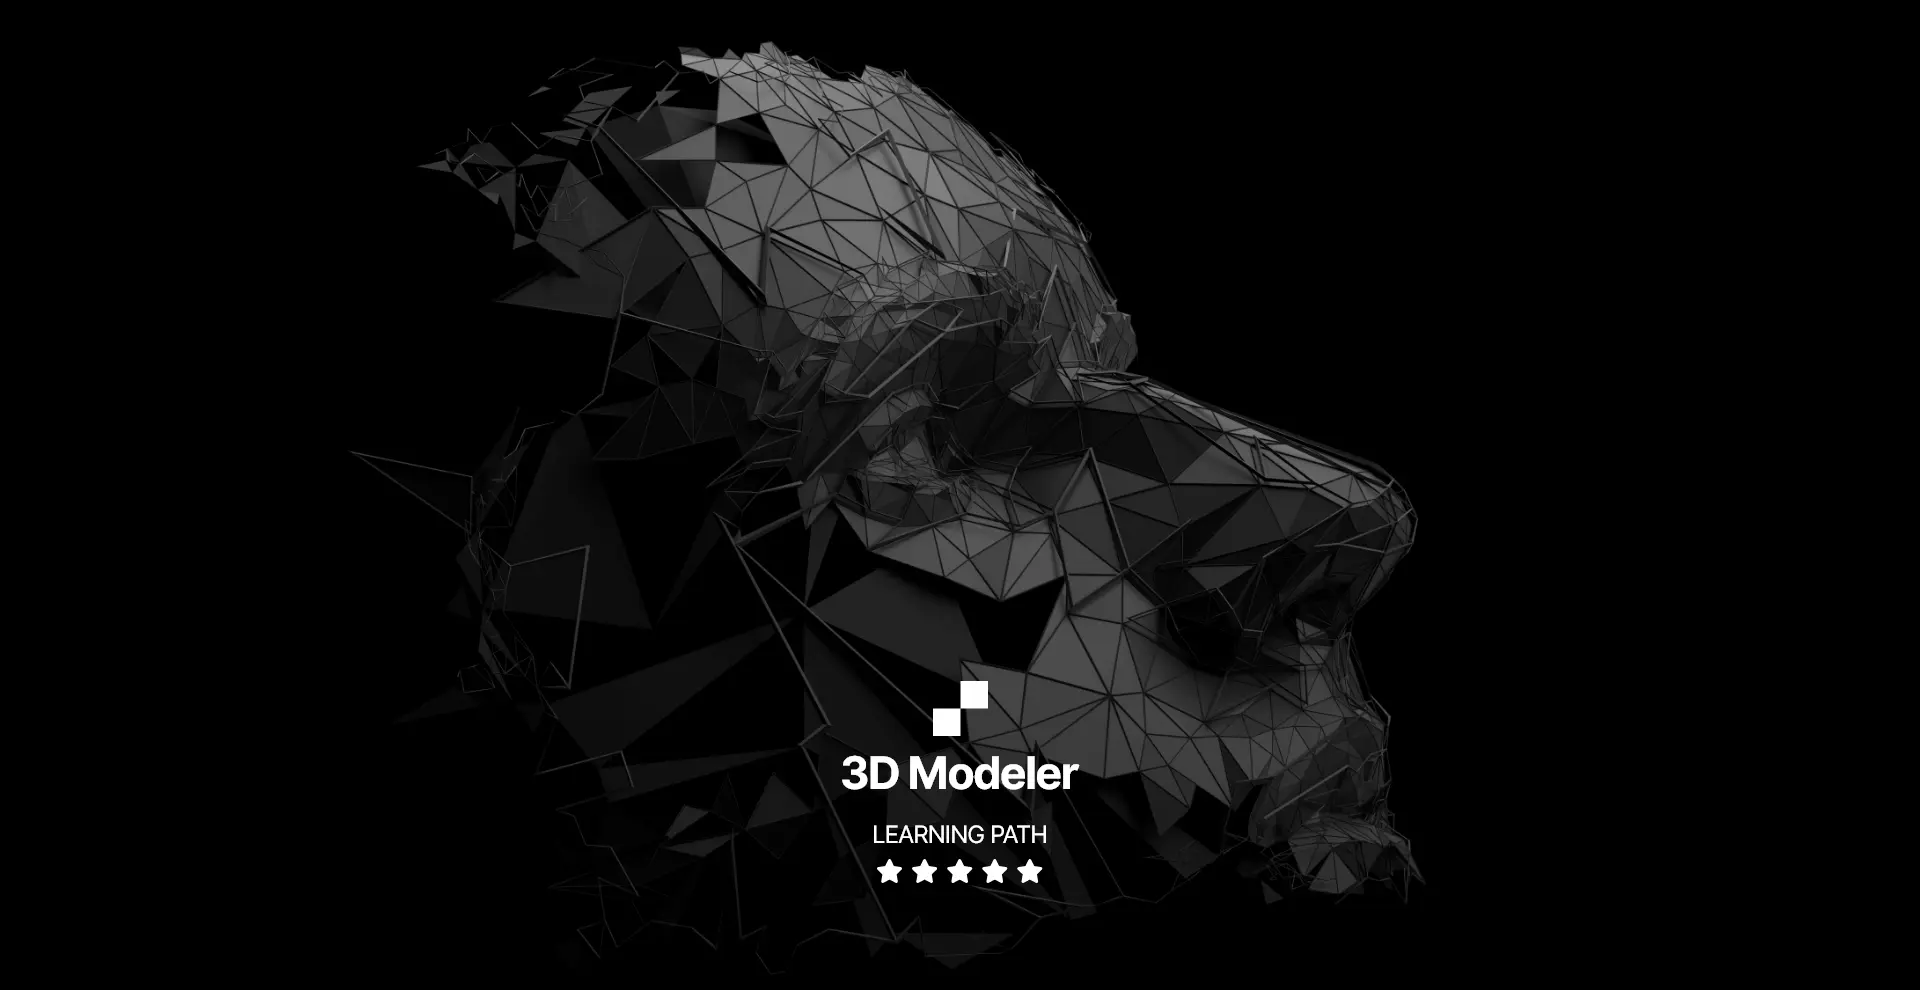 3D Modeler Learning Path